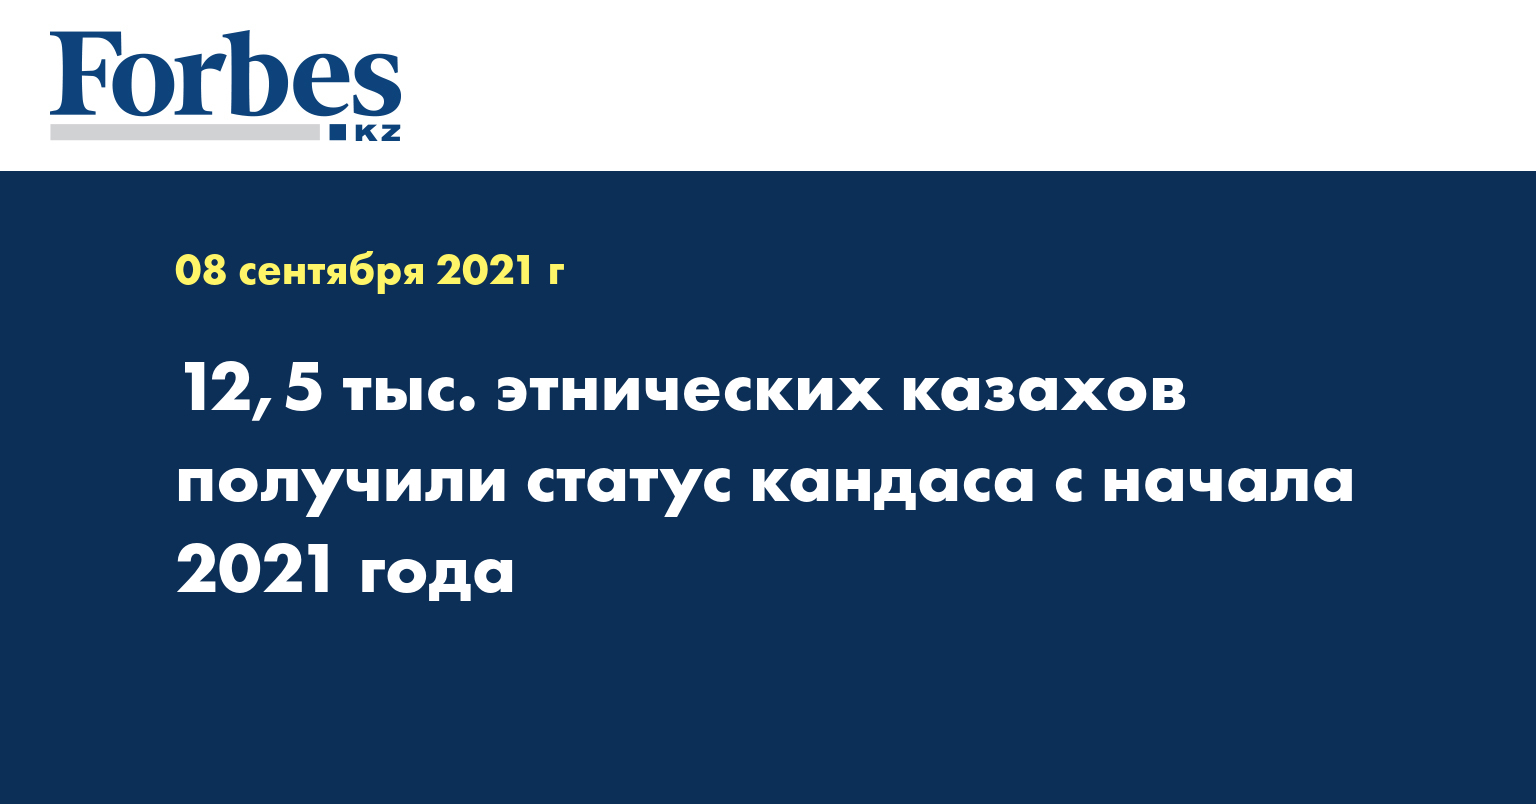 12,5 тыс. этнических казахов получили статус кандаса с начала 2021 года